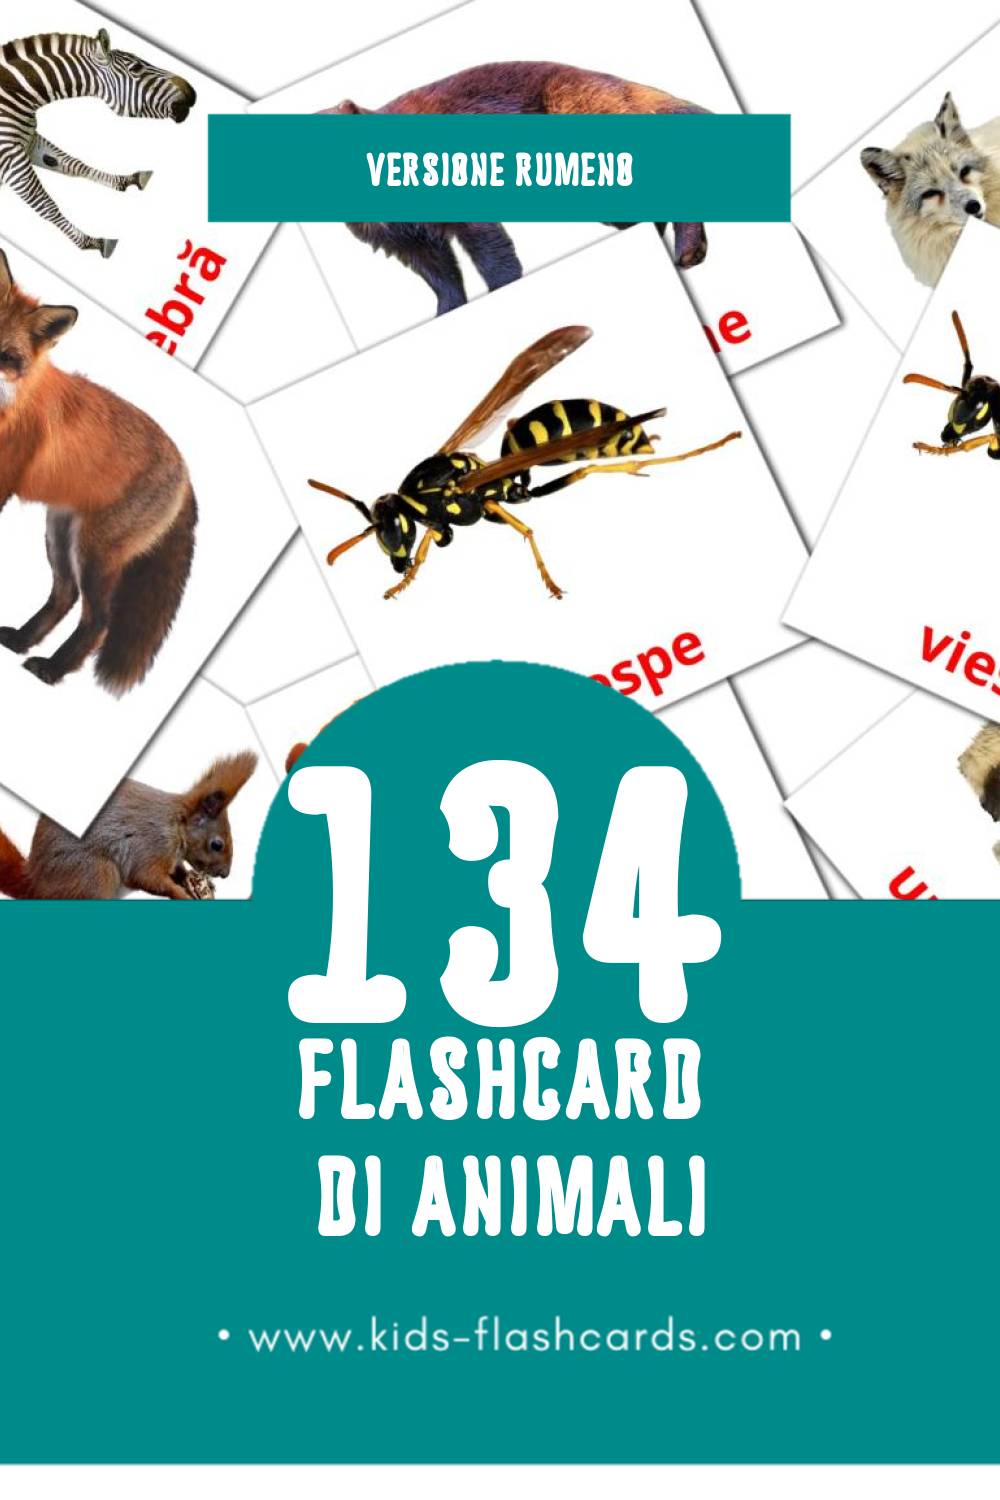 Schede visive sugli Animale per bambini (134 schede in Rumeno)